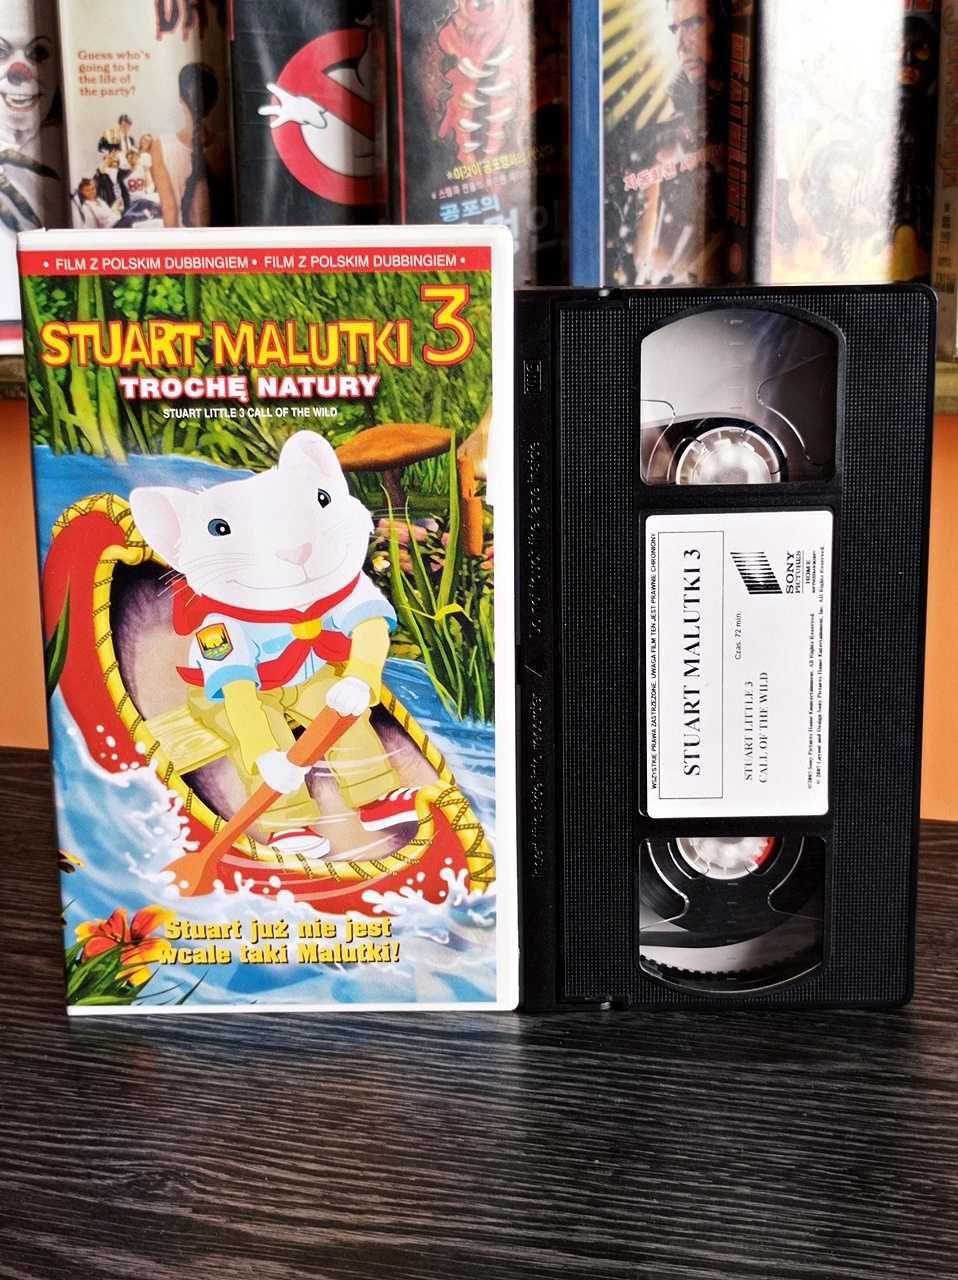 STUART MALUTKI 1,2,3 (dubbing) VHS